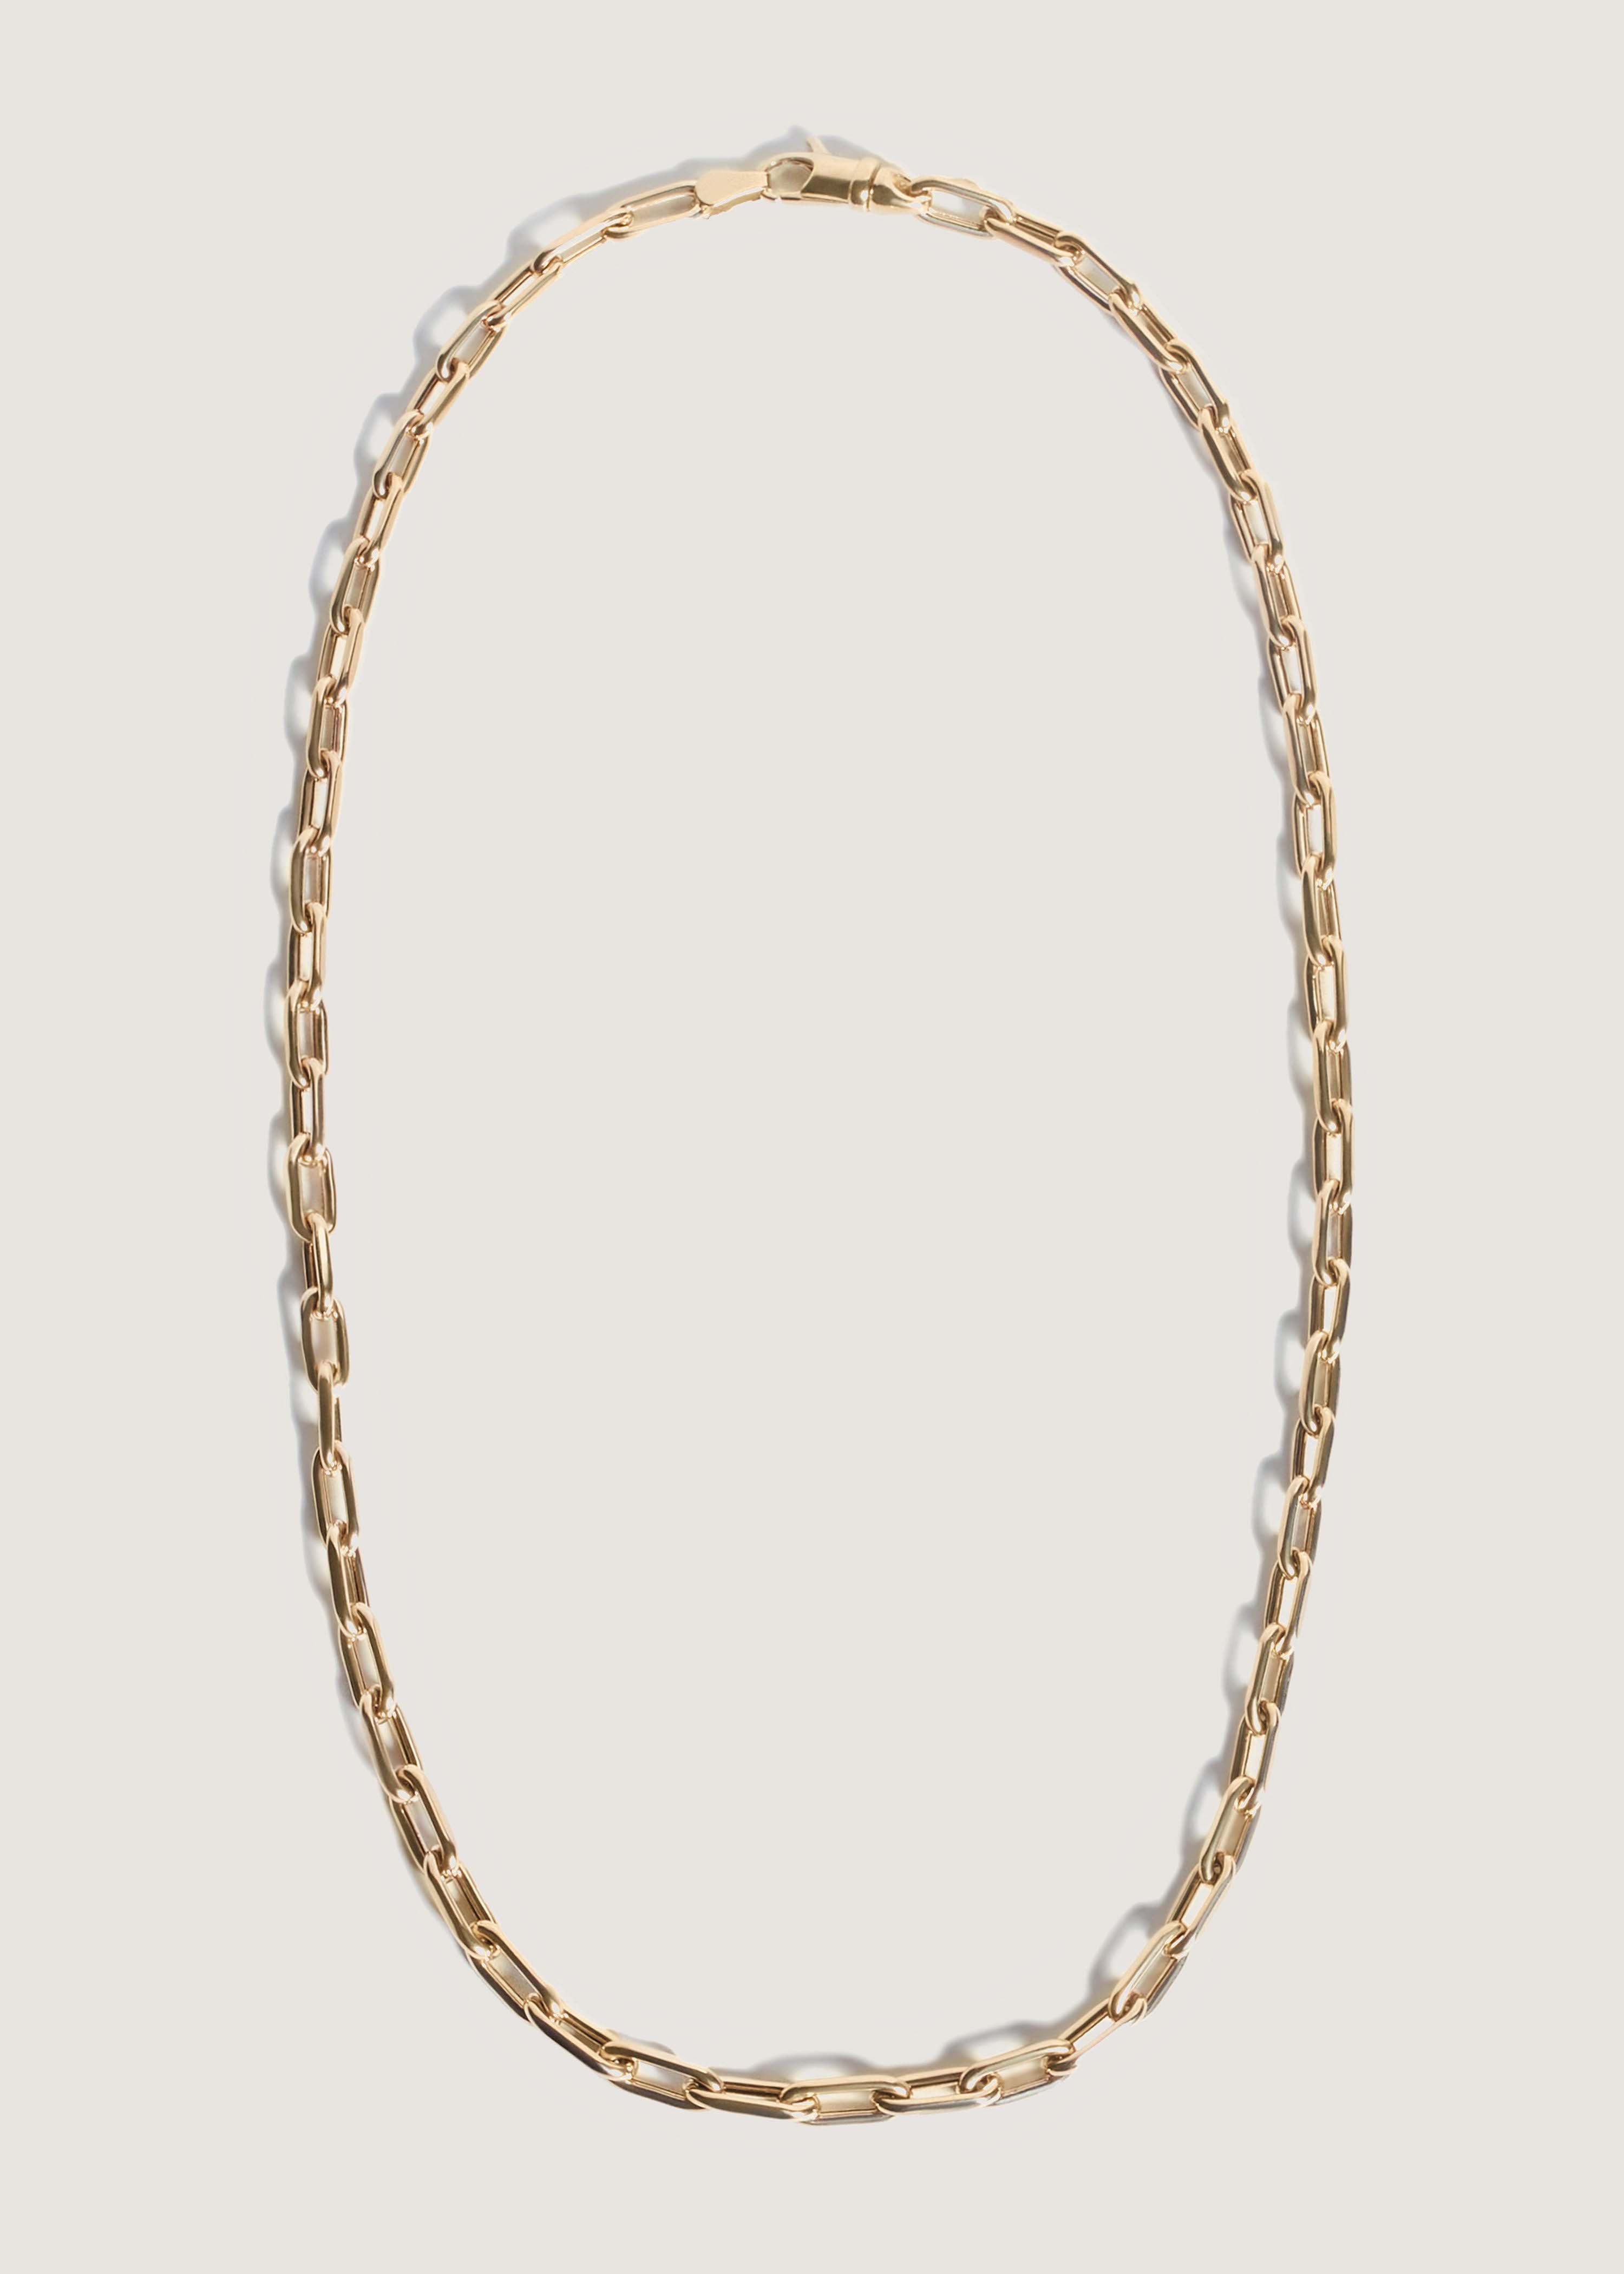 alt="Mini Link Chain Necklace"